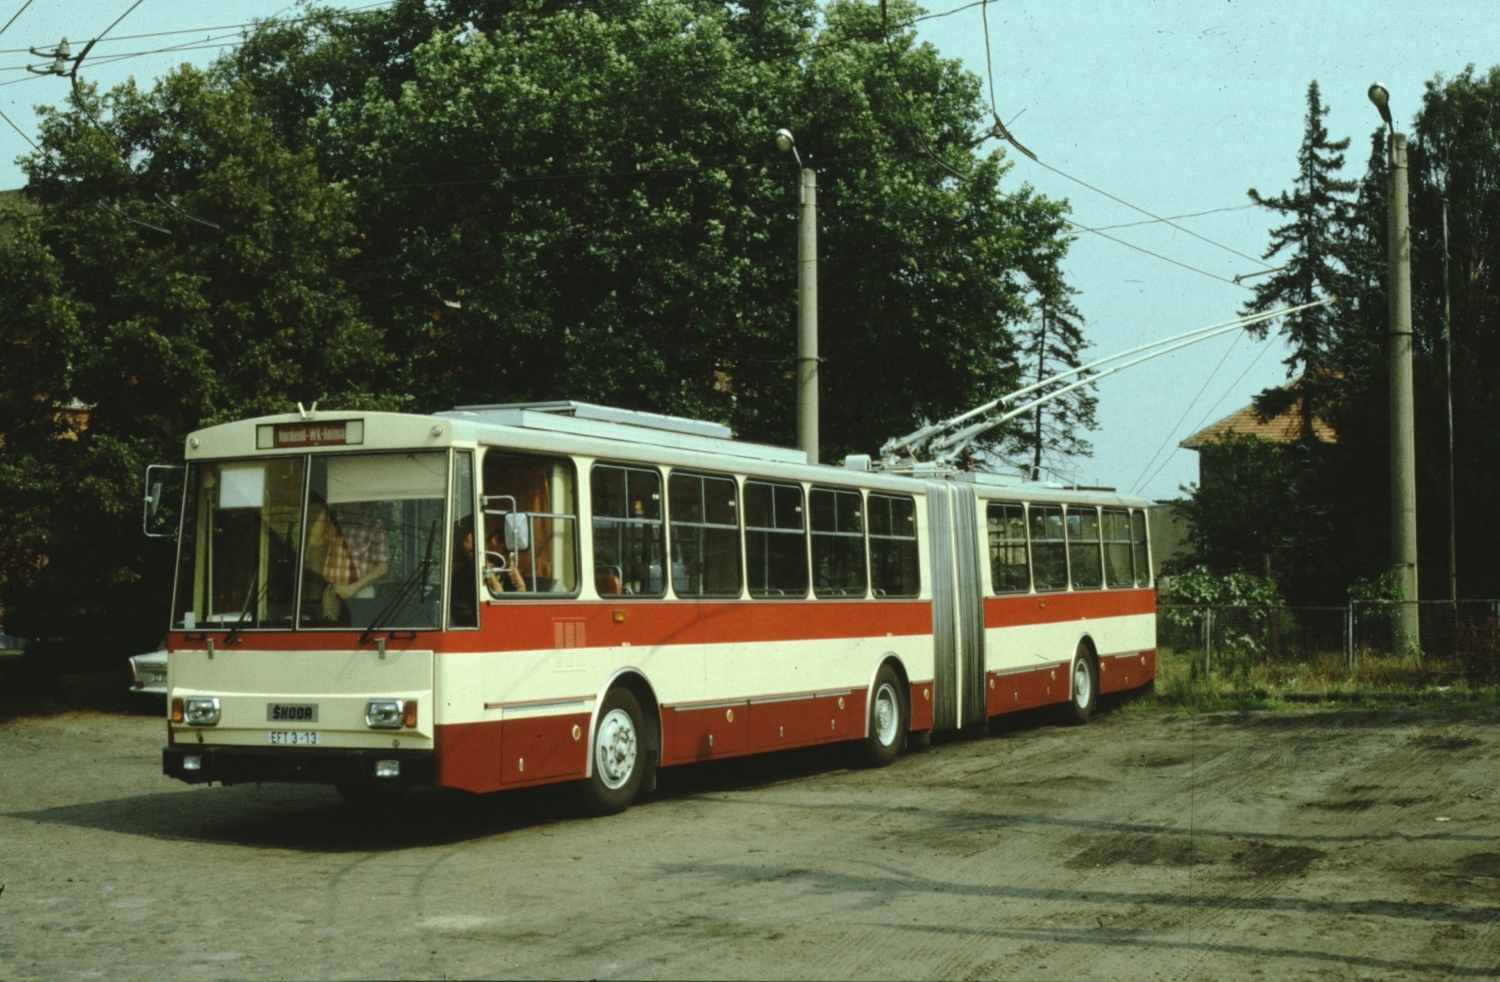 Trolejbus byl po celý srpen 1989 mimo provoz. Zkoušky tedy nezačaly právě úspěšně. (foto: Mattis Schindler)